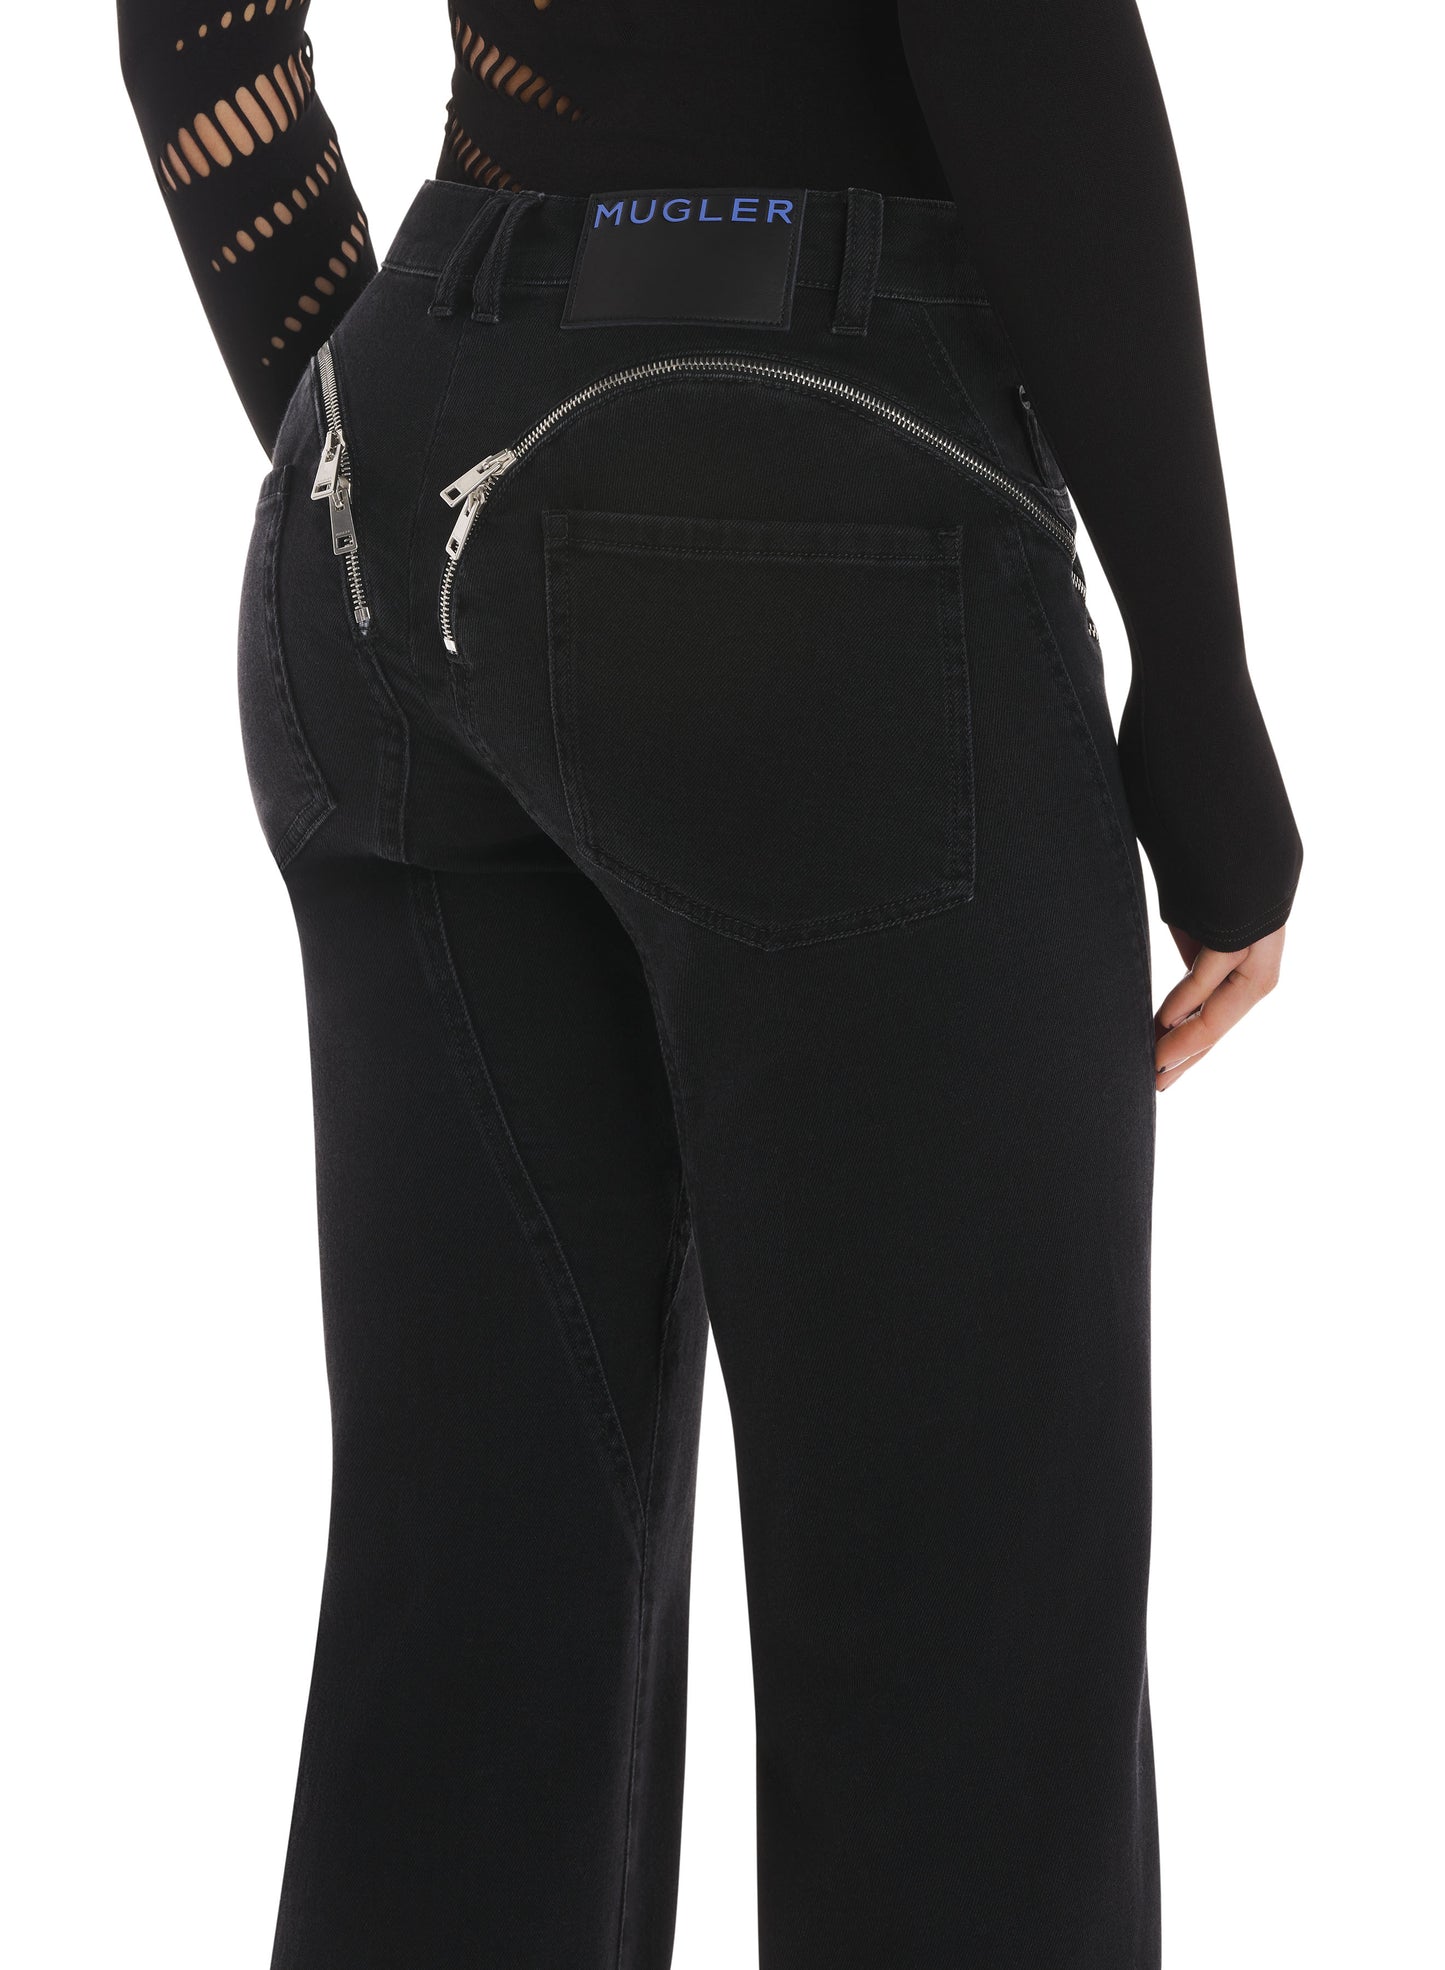 black cuffed zipper jeans